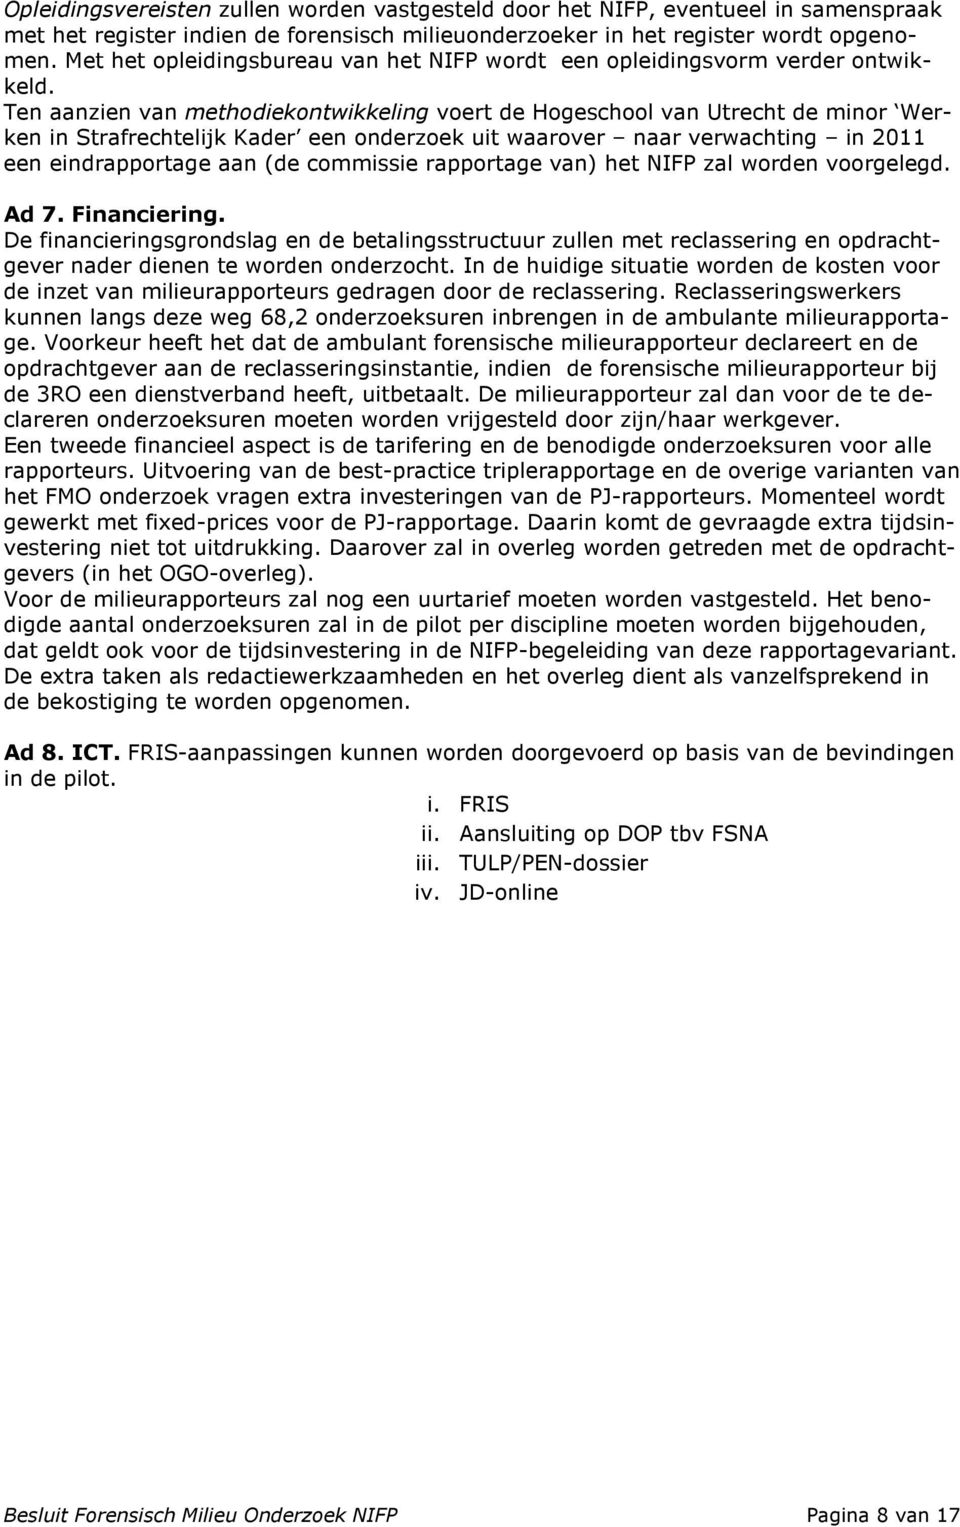 Ten aanzien van methodiekontwikkeling voert de Hogeschool van Utrecht de minor Werken in Strafrechtelijk Kader een onderzoek uit waarover naar verwachting in 2011 een eindrapportage aan (de commissie